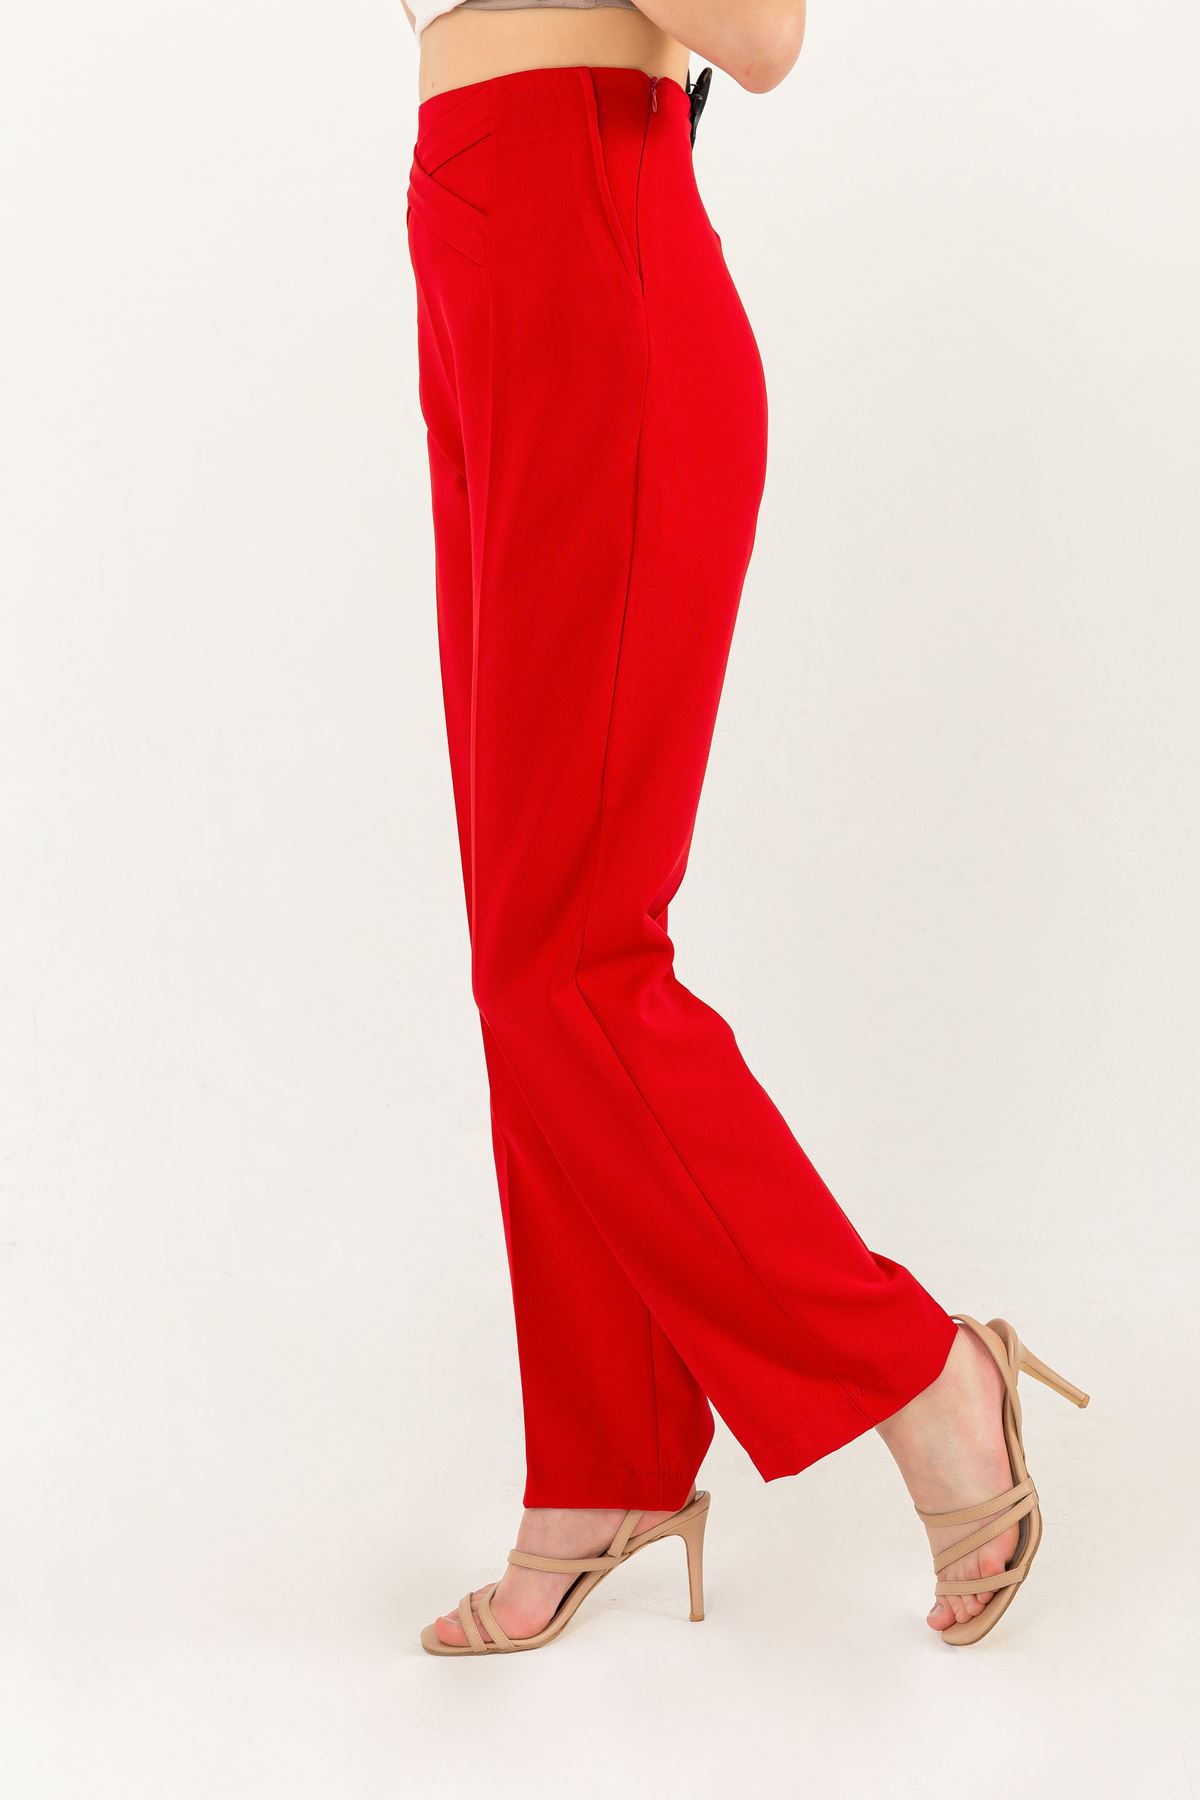 Atlas Fabric Long Waist Detailed Classical Women Trouser-Red